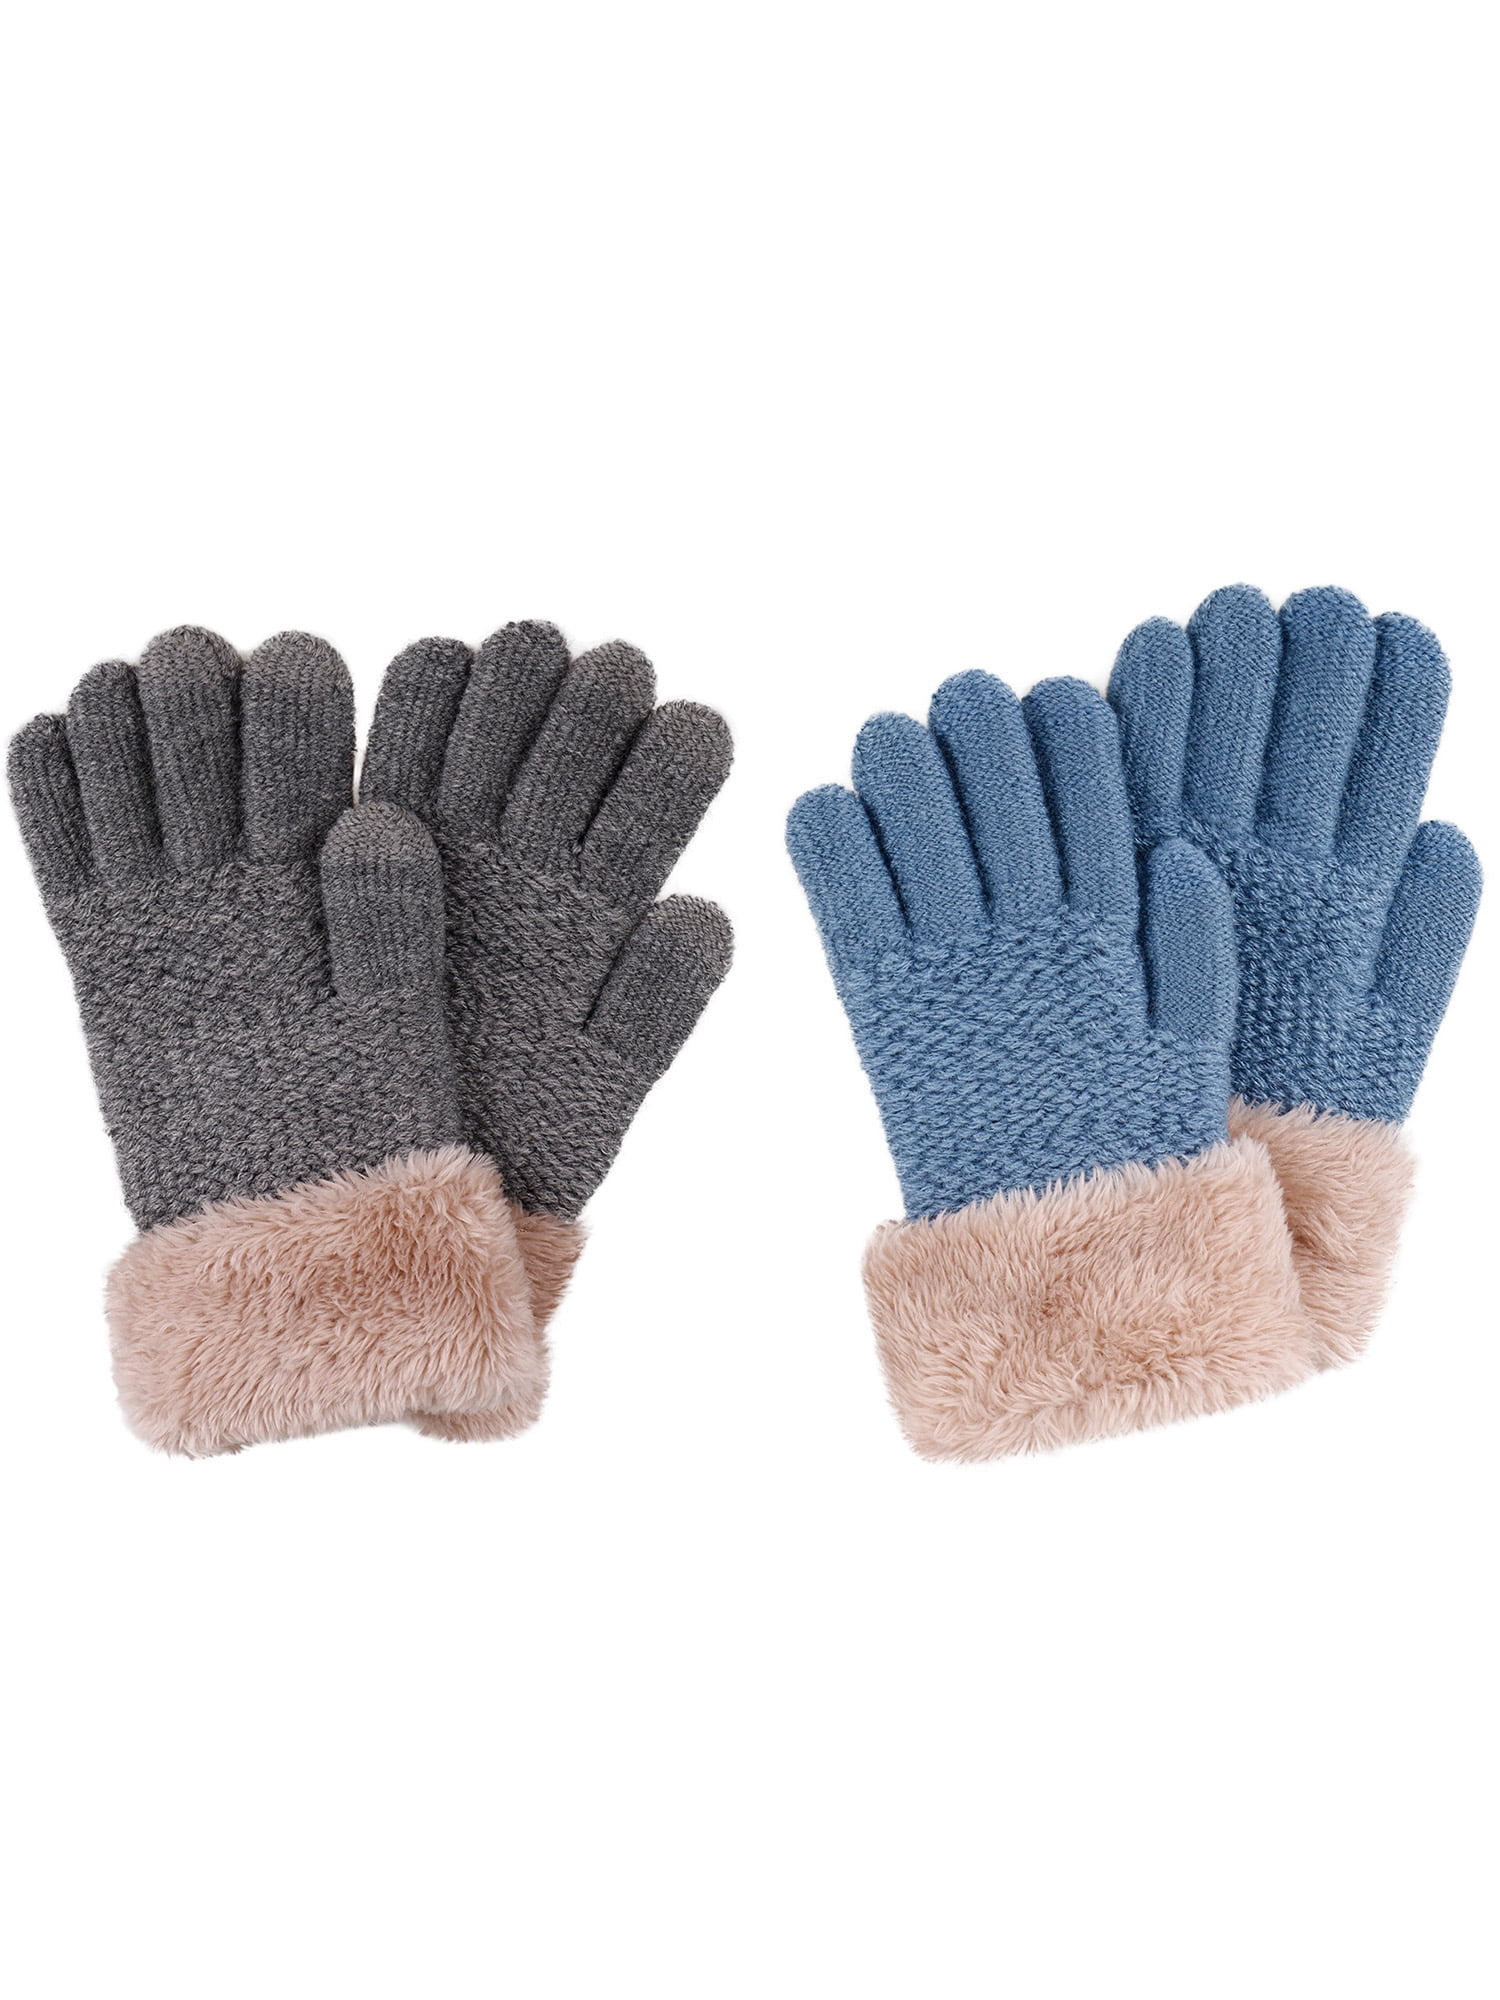 Baby Boy Toddler Winter Warm Mittens Gloves With String Fun Fur Size 3-12 Months 